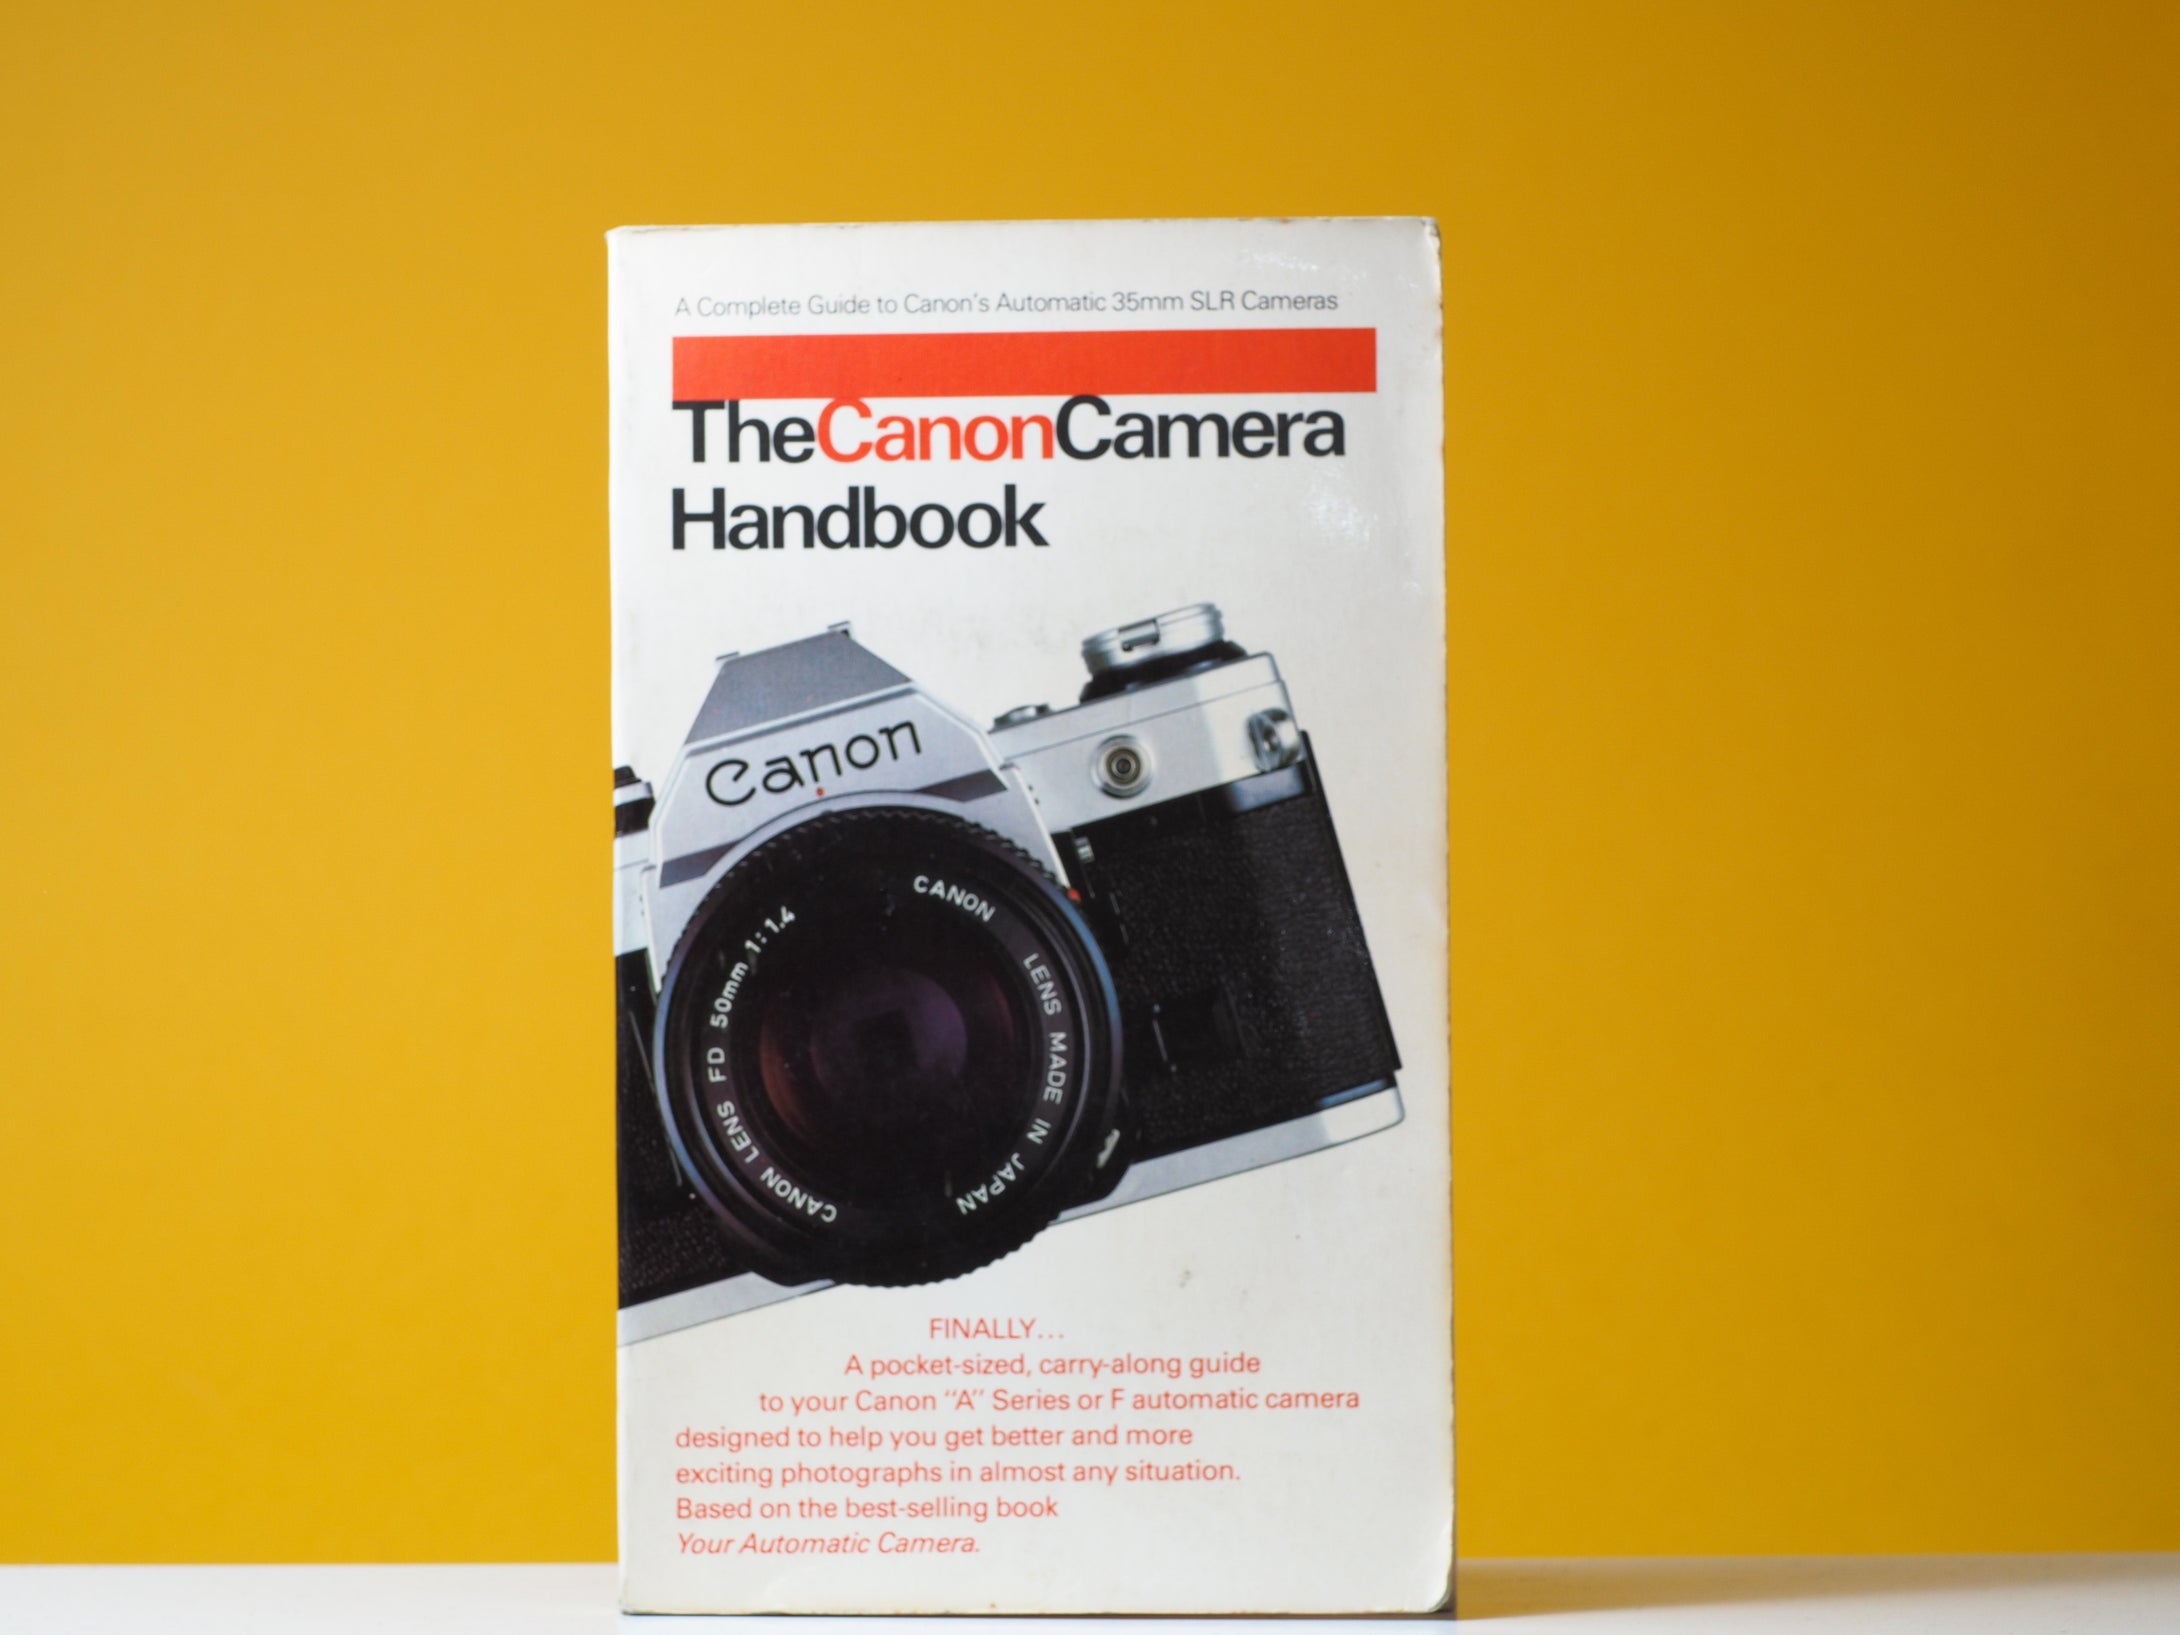 The Canon Camera Handbook